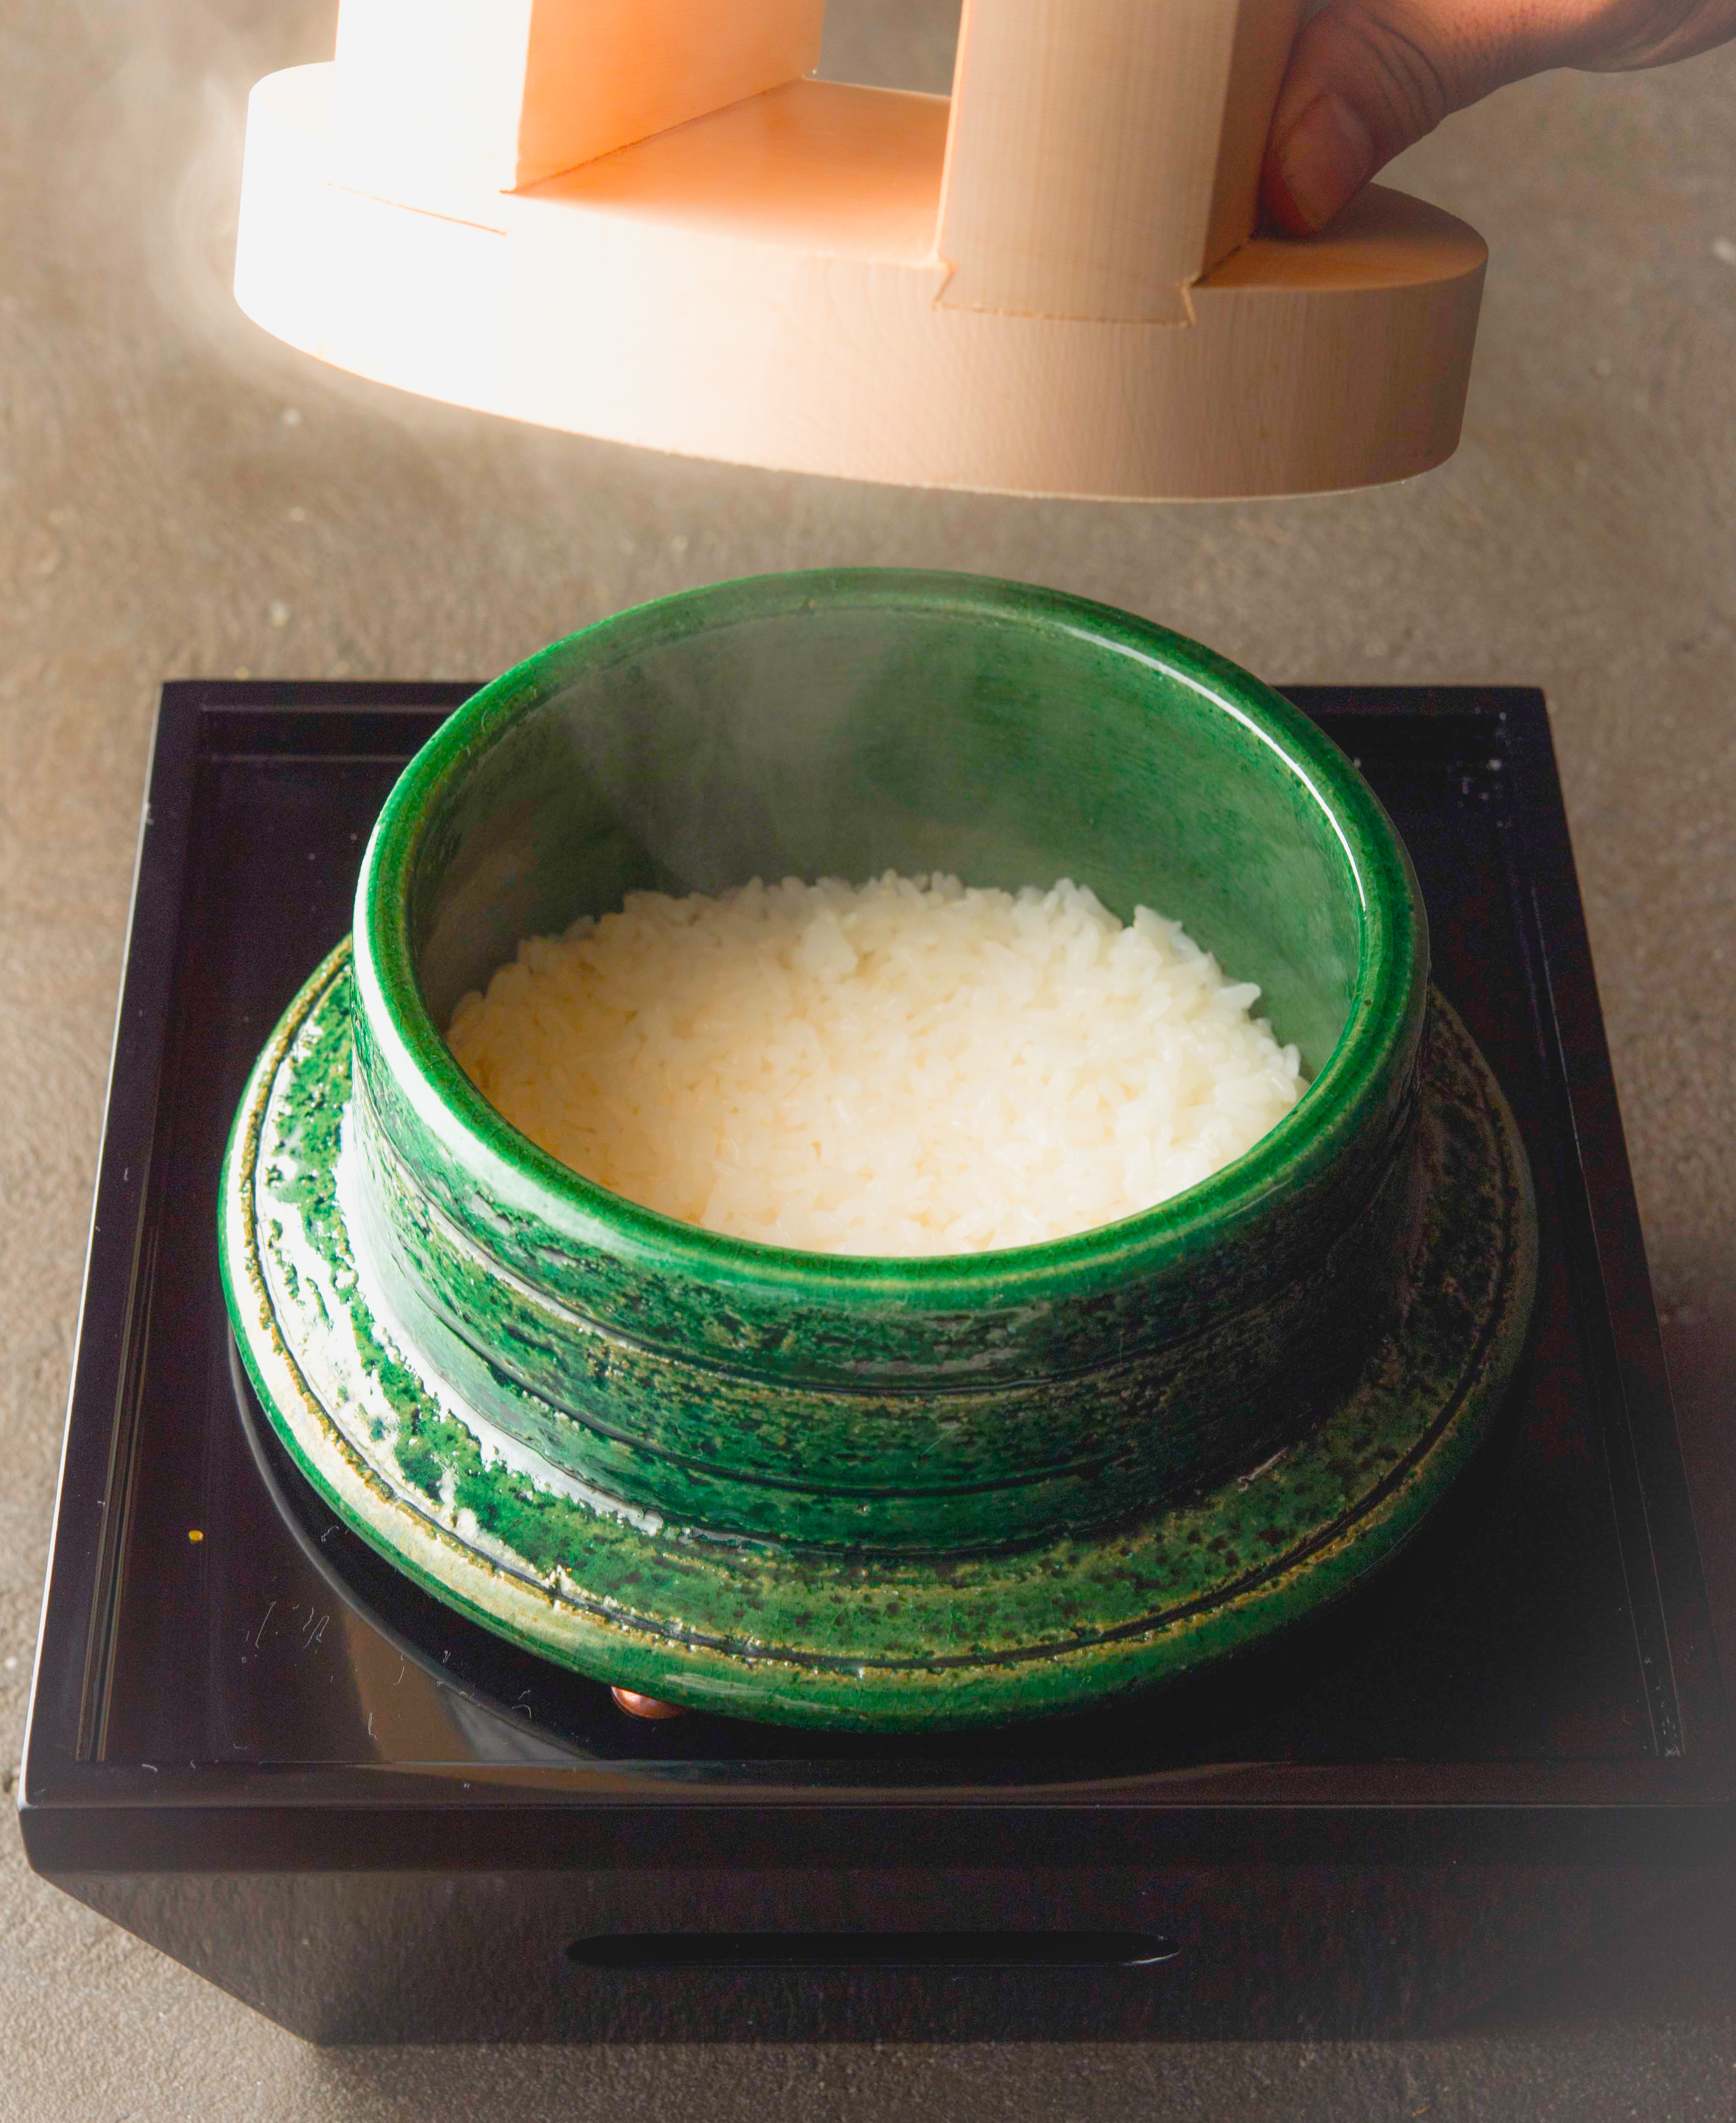 Yakiniku Oboshimeshi_Rice Cooked in a Clay Pot 